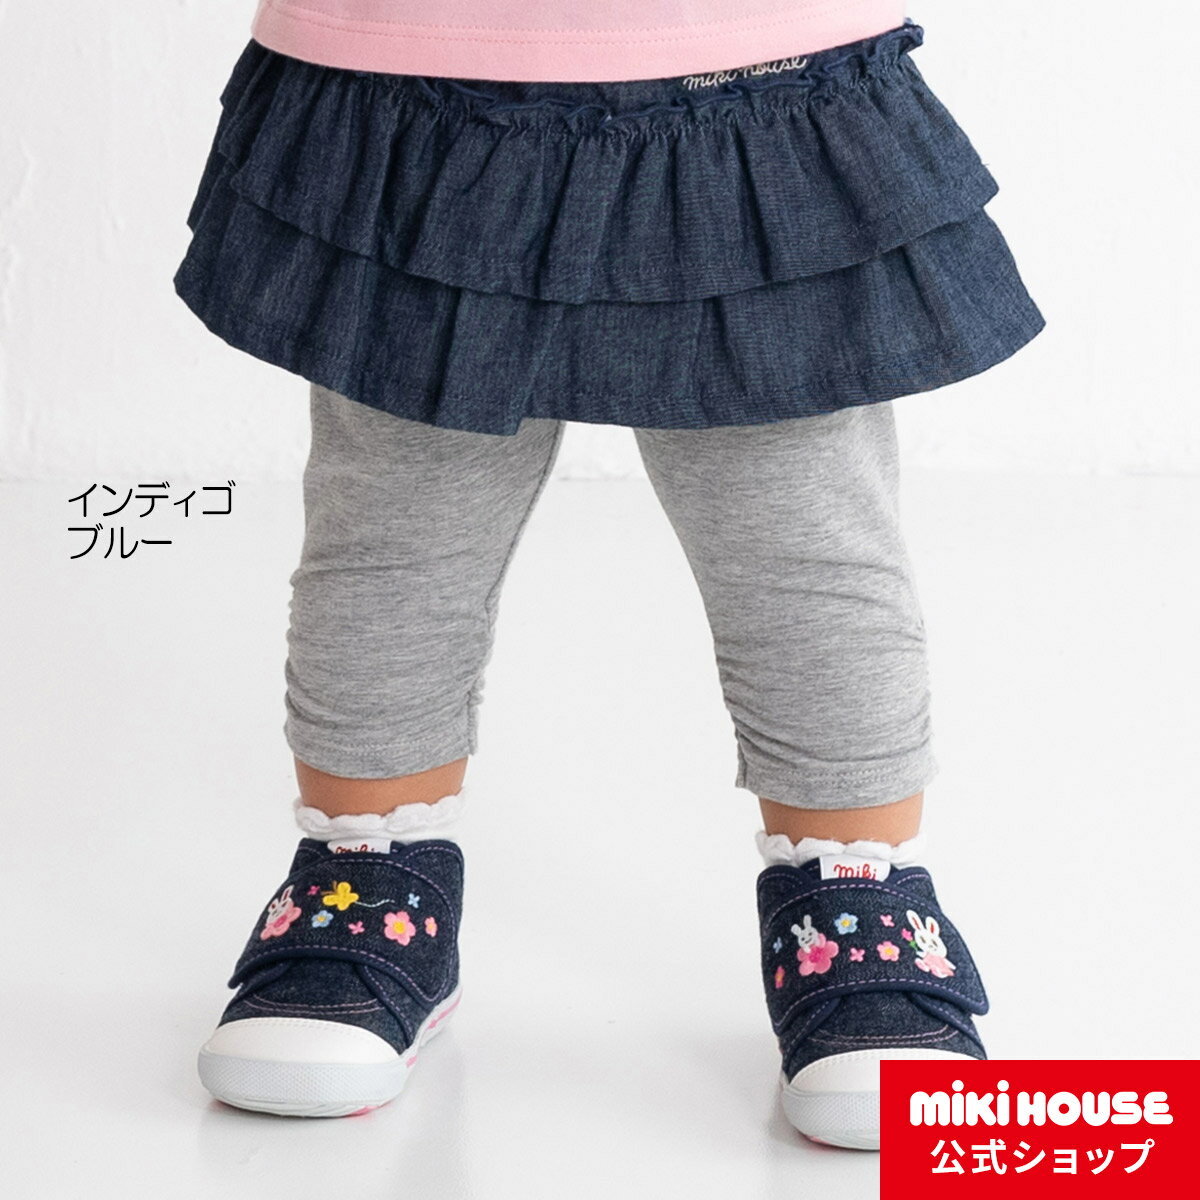 【ミキハウス公式ショップ】ミキハウス mikihouse スカート付き7分丈パンツ（80cm・90cm・100cm・110cm）ベビー服 キッズ 子供服 こども 女の子 ボトムス